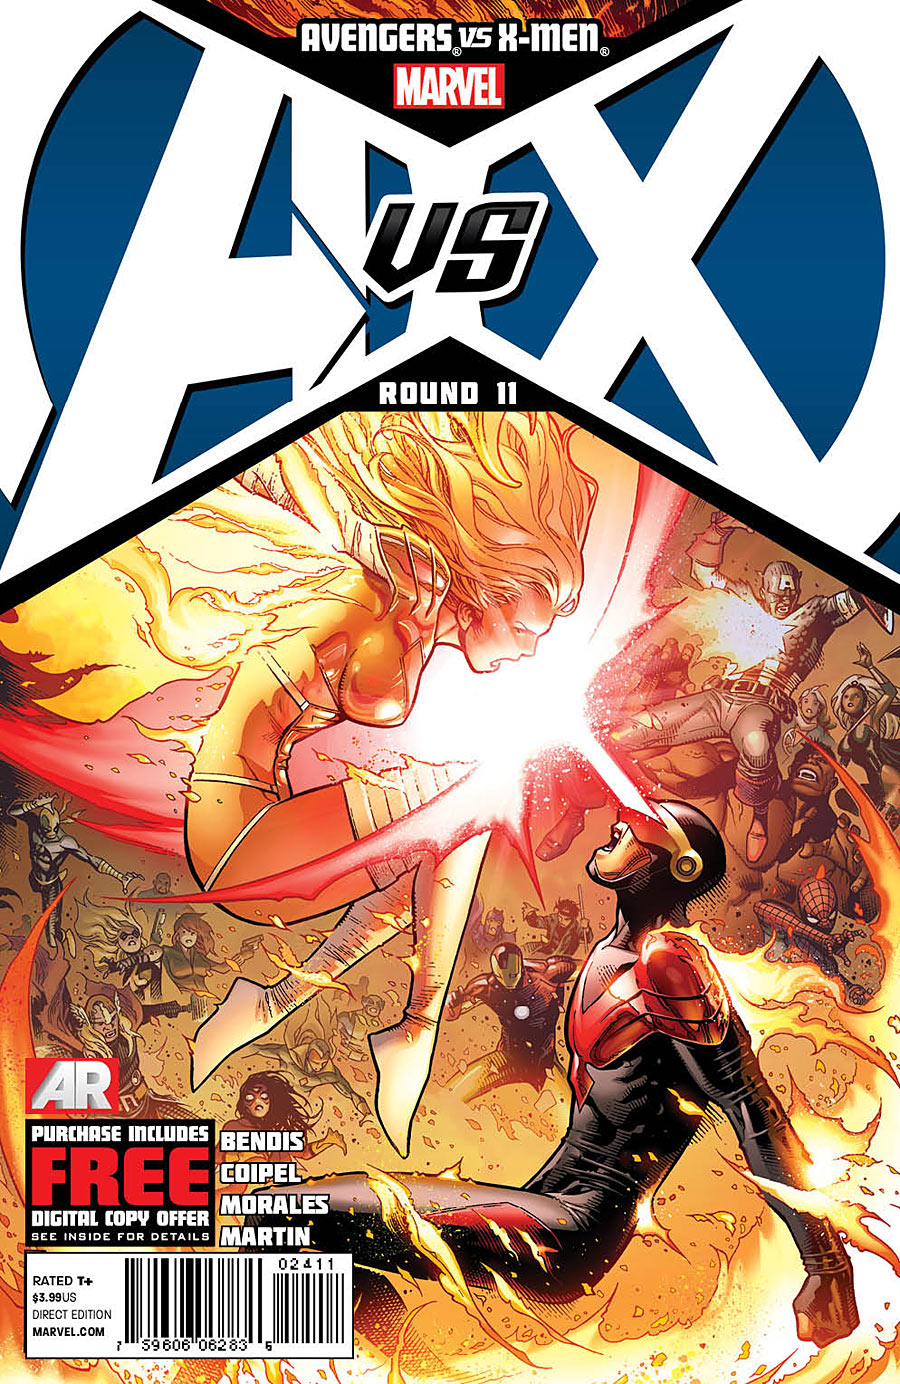 Avengers vs X-men Vol 1 11 | Avengers and X-men Wiki | Fandom